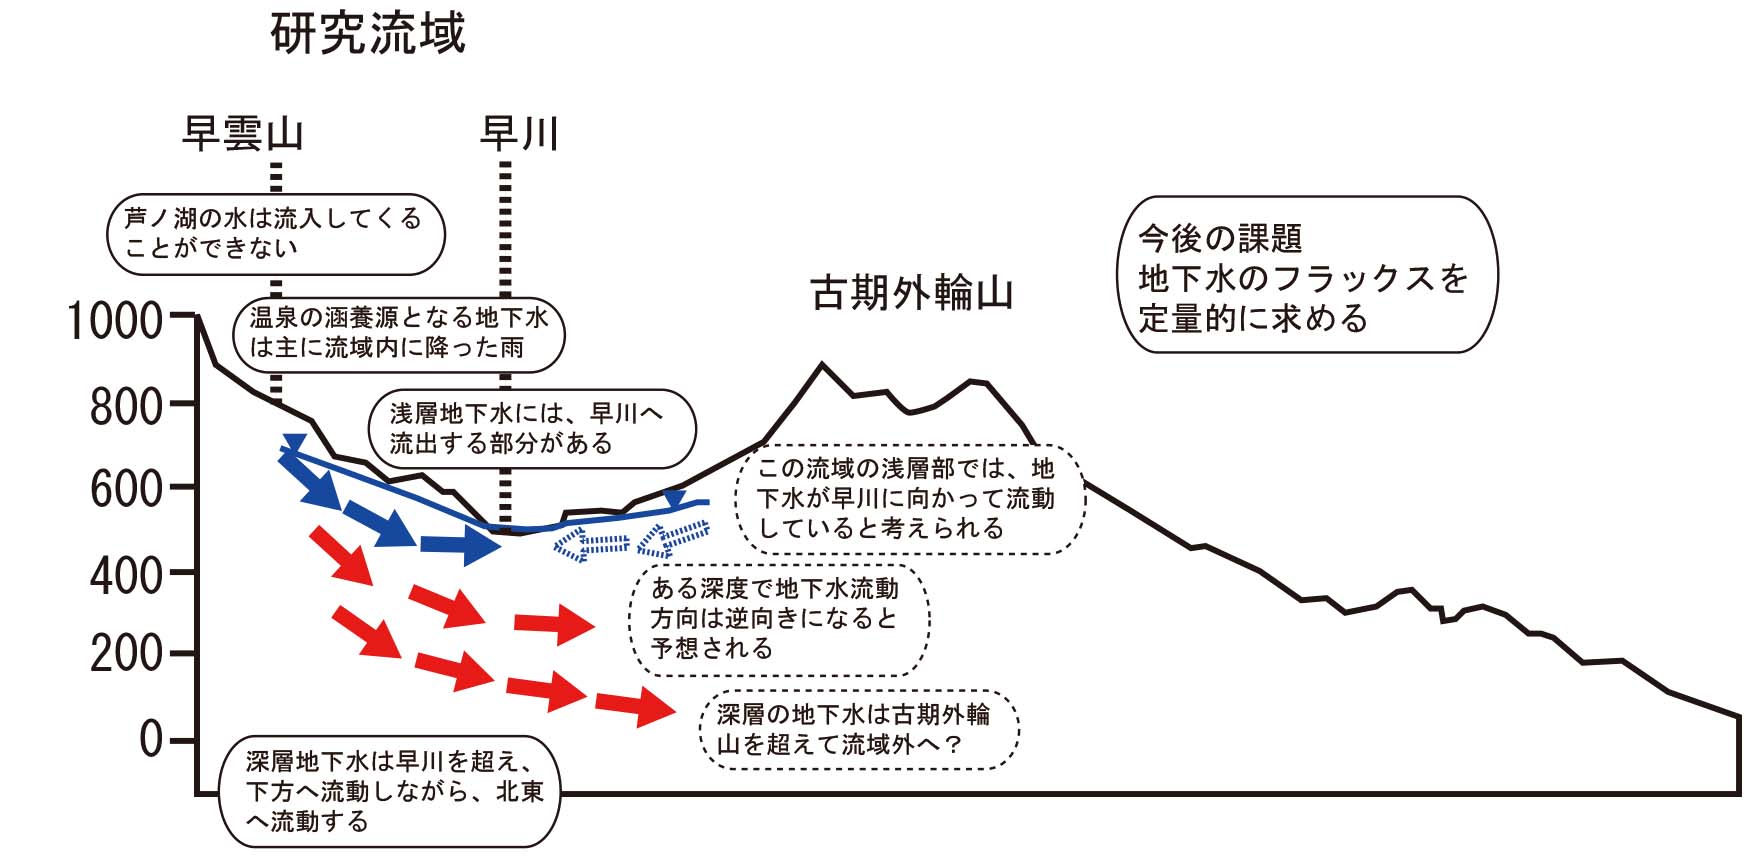 箱根強羅地区周辺における地下水流動の概念図